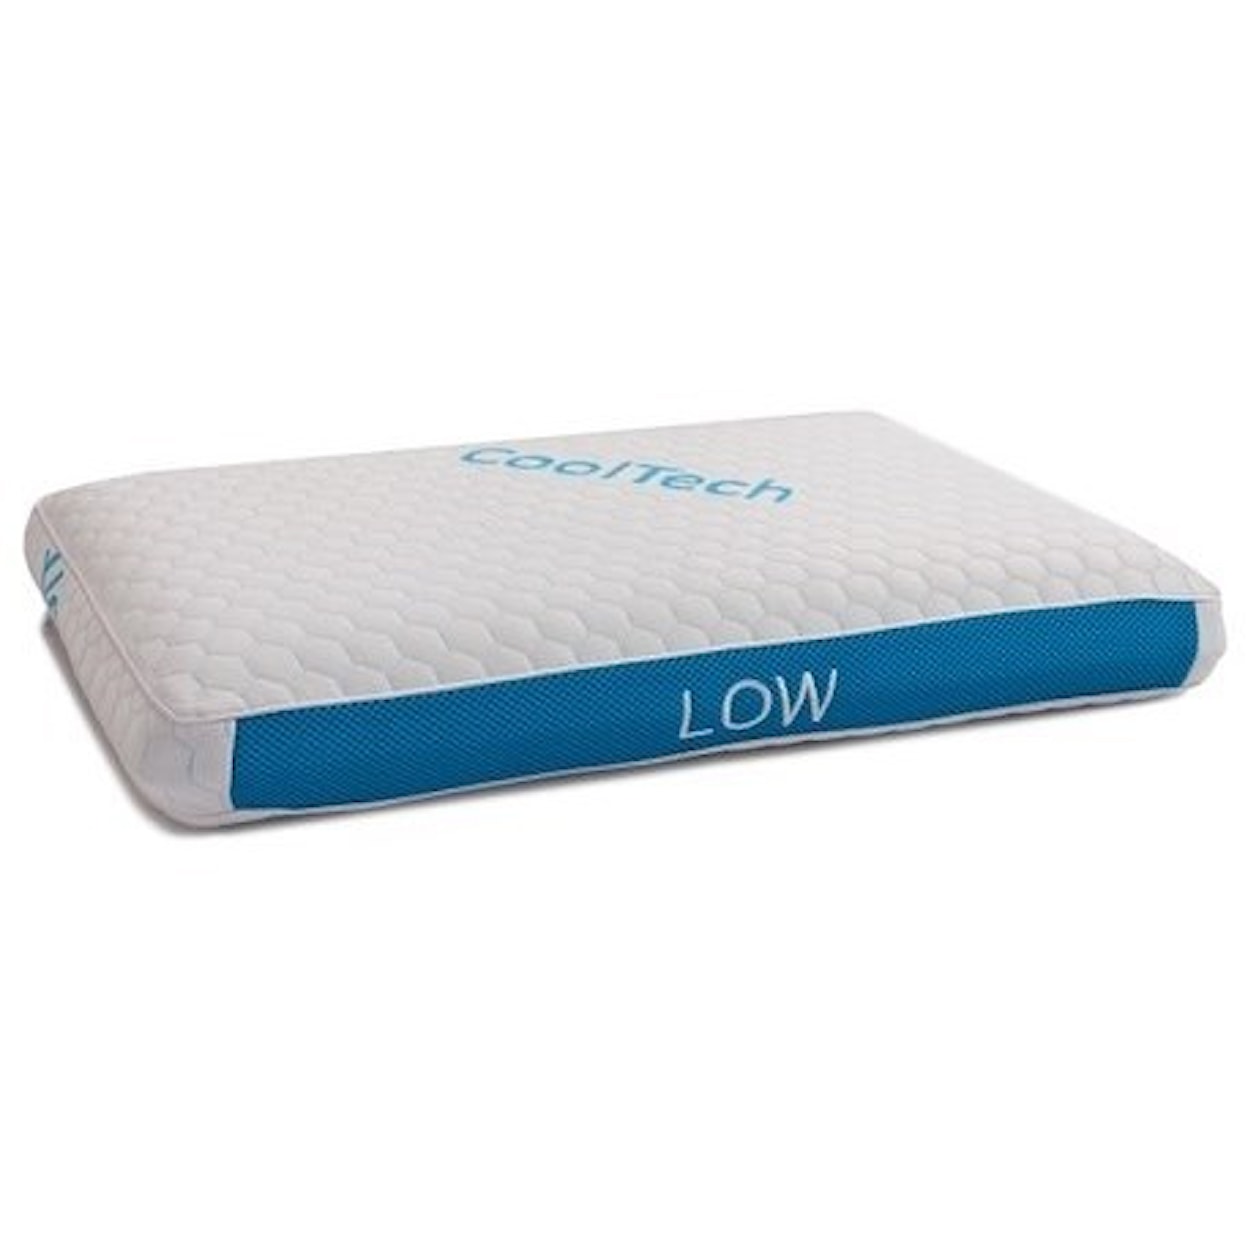 BedTech CoolTech Pillows Cooltech Low Standard Pillow